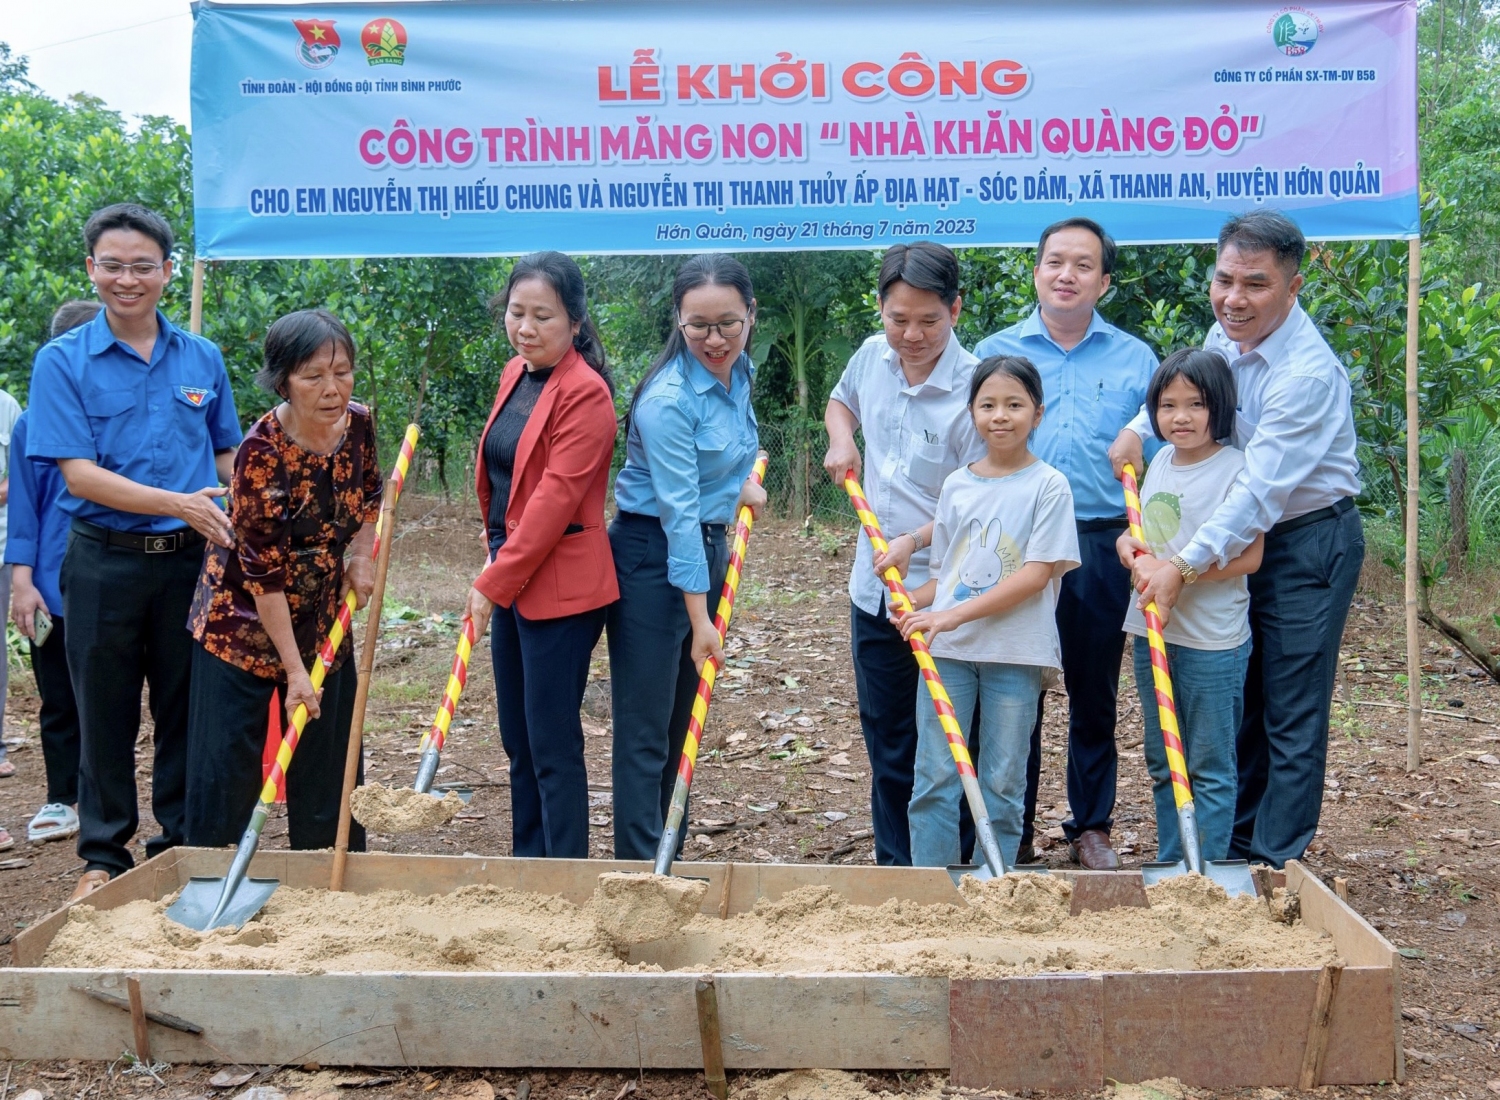 Lễ khởi công công trình măng non "Nhà Khăn quàng đỏ" tại ấp Địa Hạt - Sóc Dầm, xã Thanh An, huyện Hớn Quản.